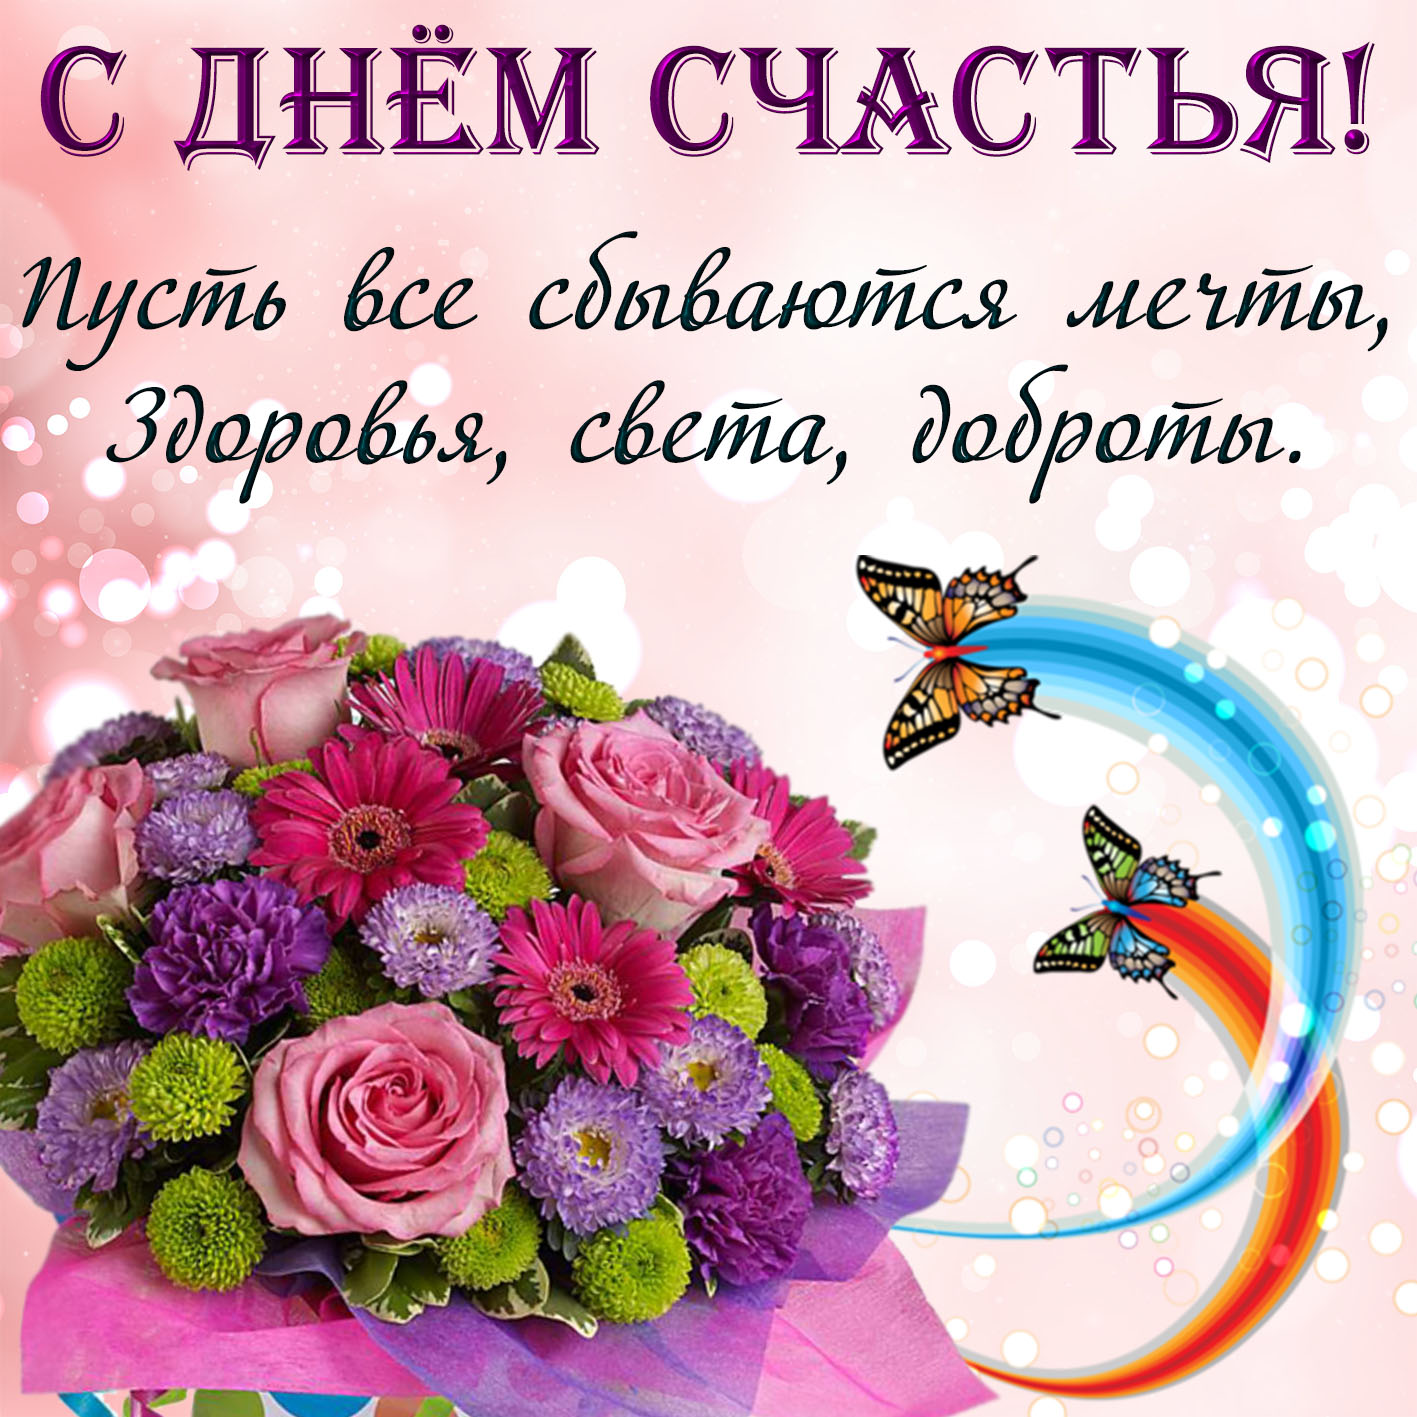 21 февраля праздник день счастья. День женского счастья. С днем счастья открытки. Поздравления с днём женского счастья. С днём счастья поздравления красивые.